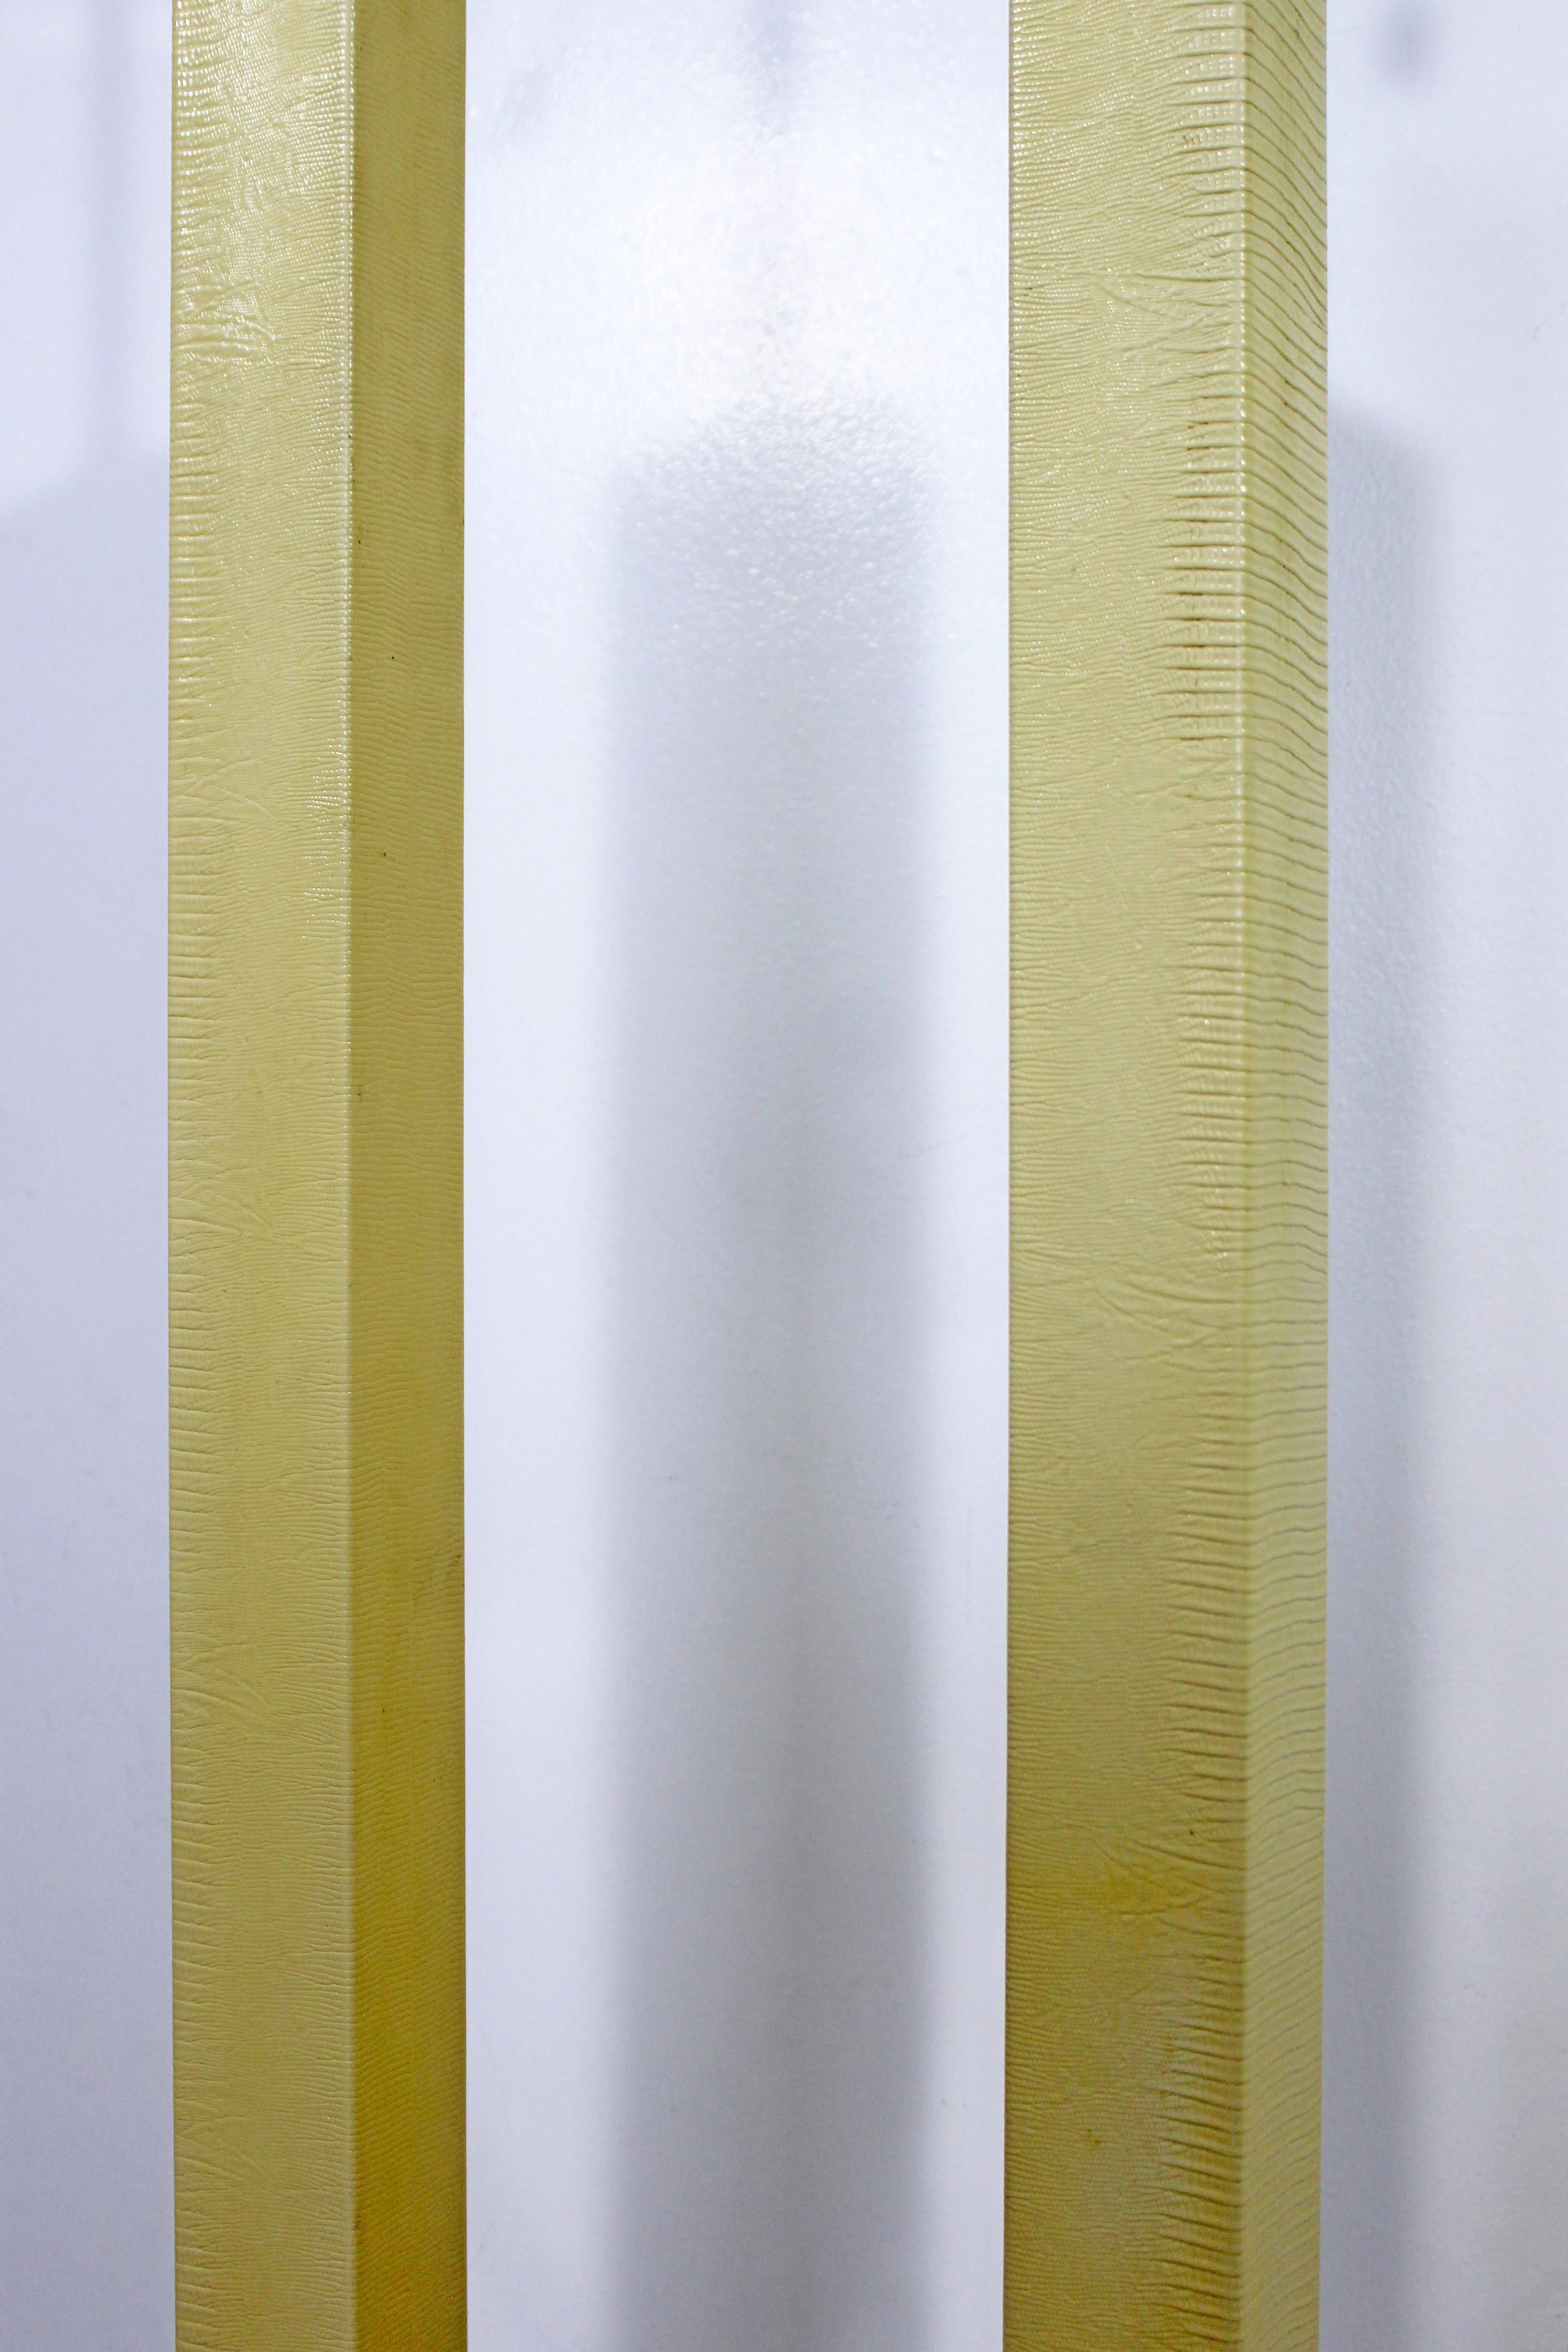 Mid-Century Modern Pair of Lizard Column Chrome Floor Lamps, Karl Springer 1970s 1